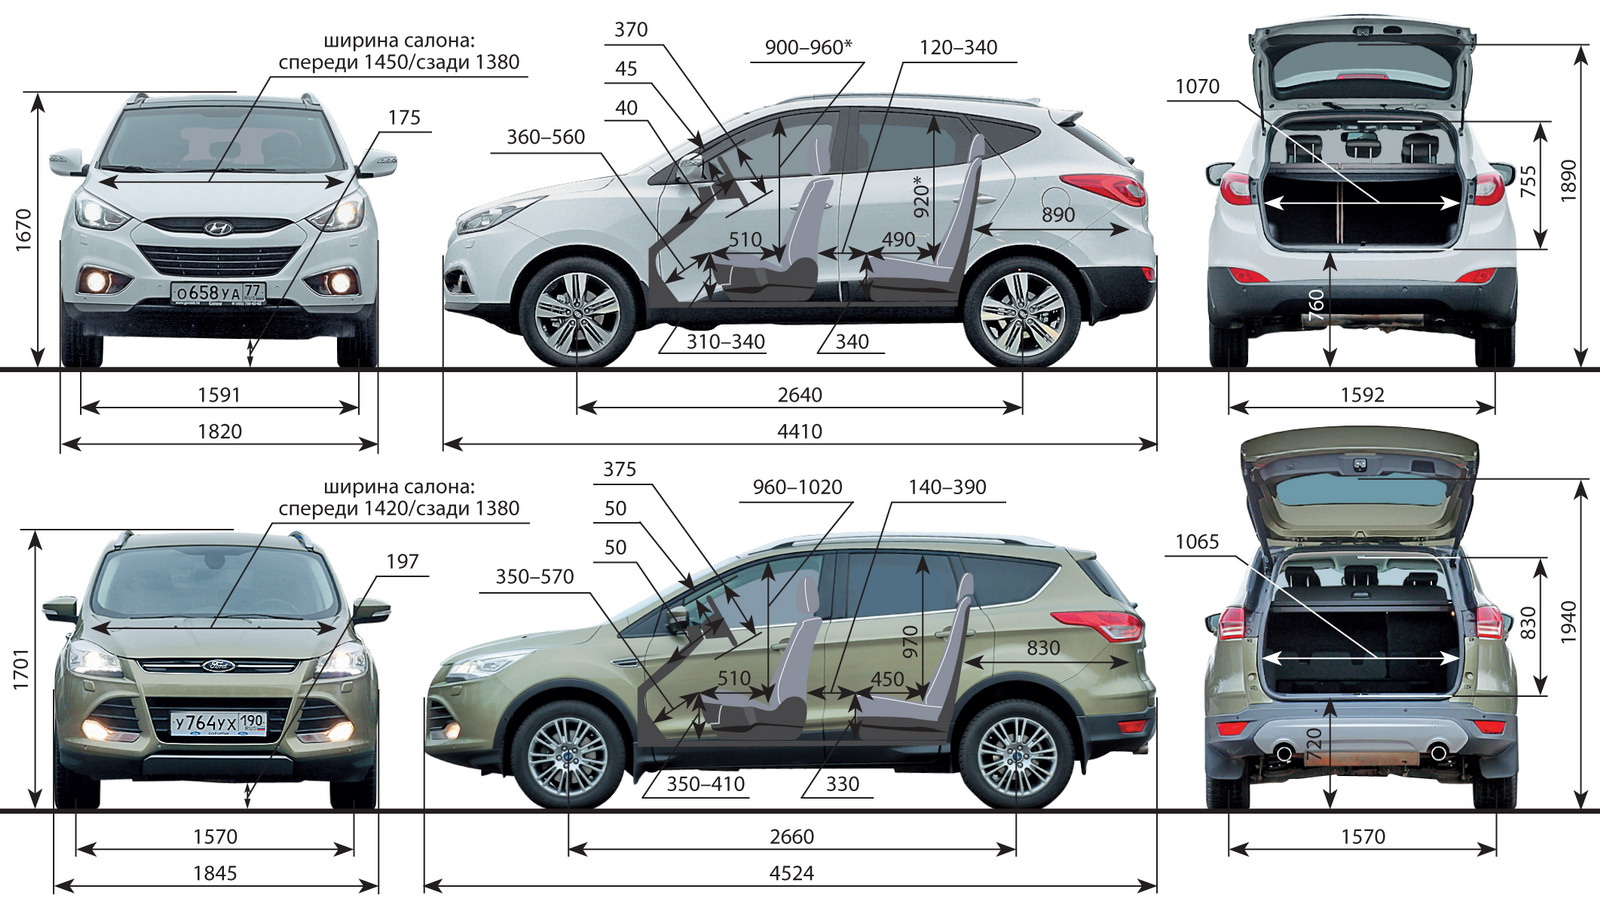 Обзор нового ford kuga 2 (рестайлинг) - фотографии - важные моменты!